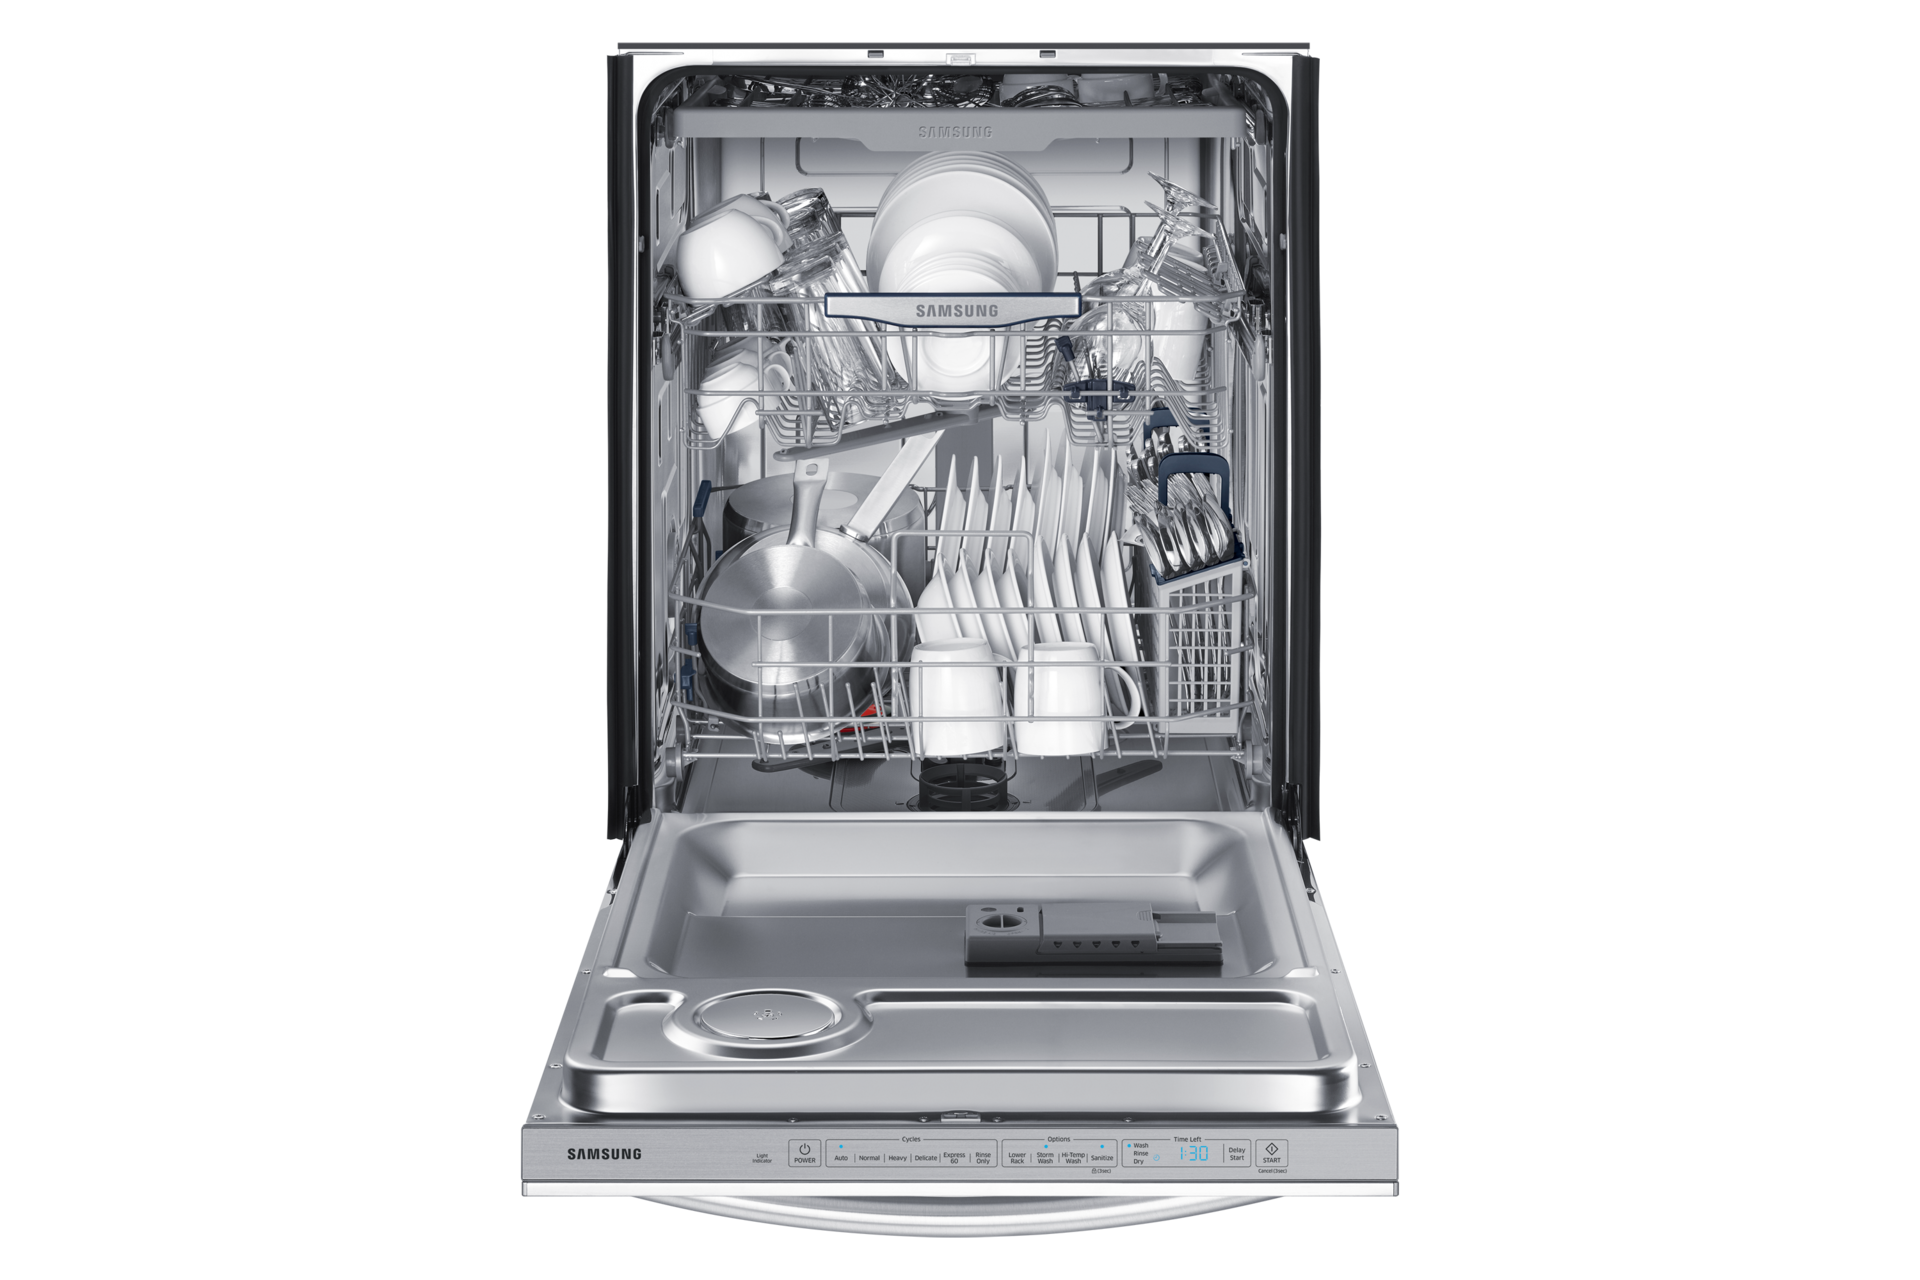 Samsung DW80K7050 Third Rack Dishwasher with StormWash | Samsung CA